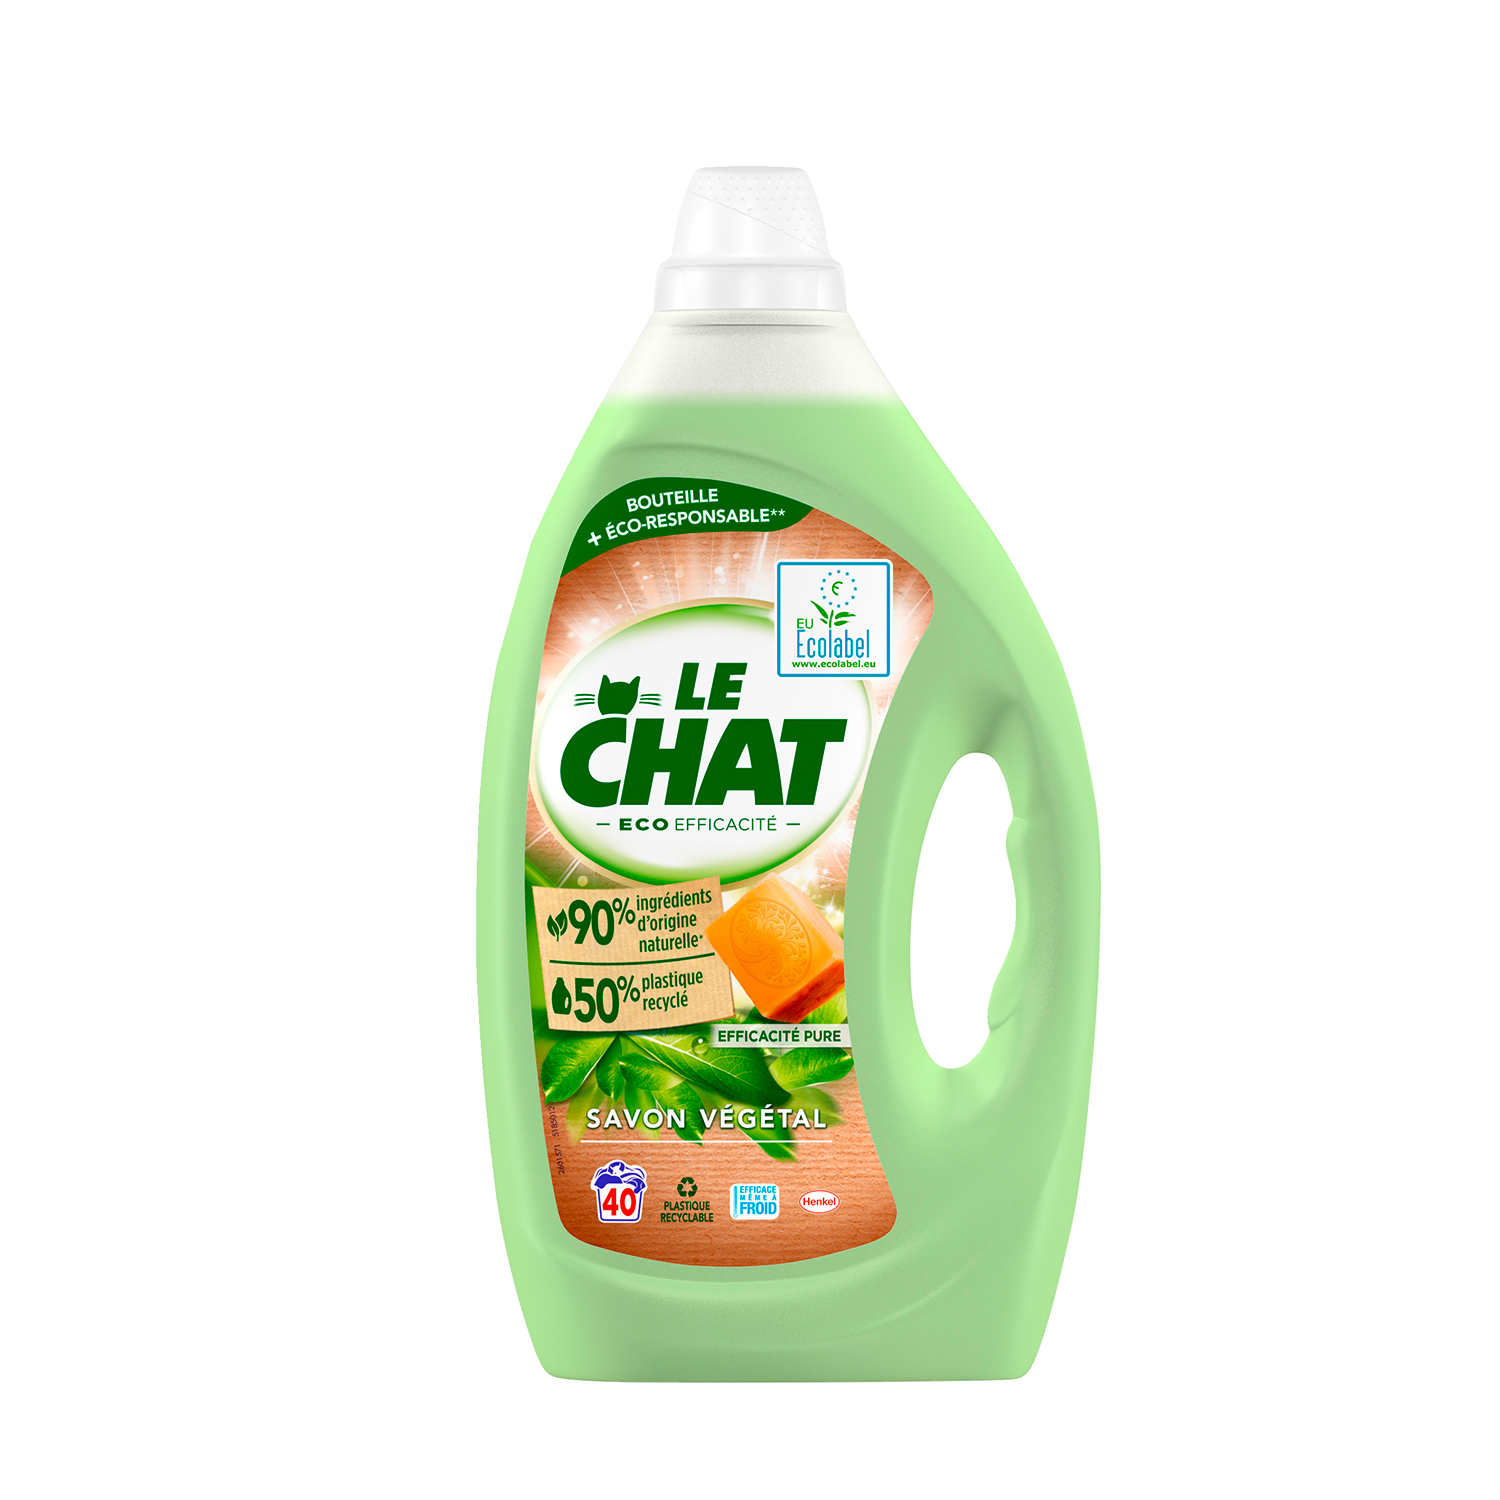 Le Chat – Lessive Liquide Ecolabel